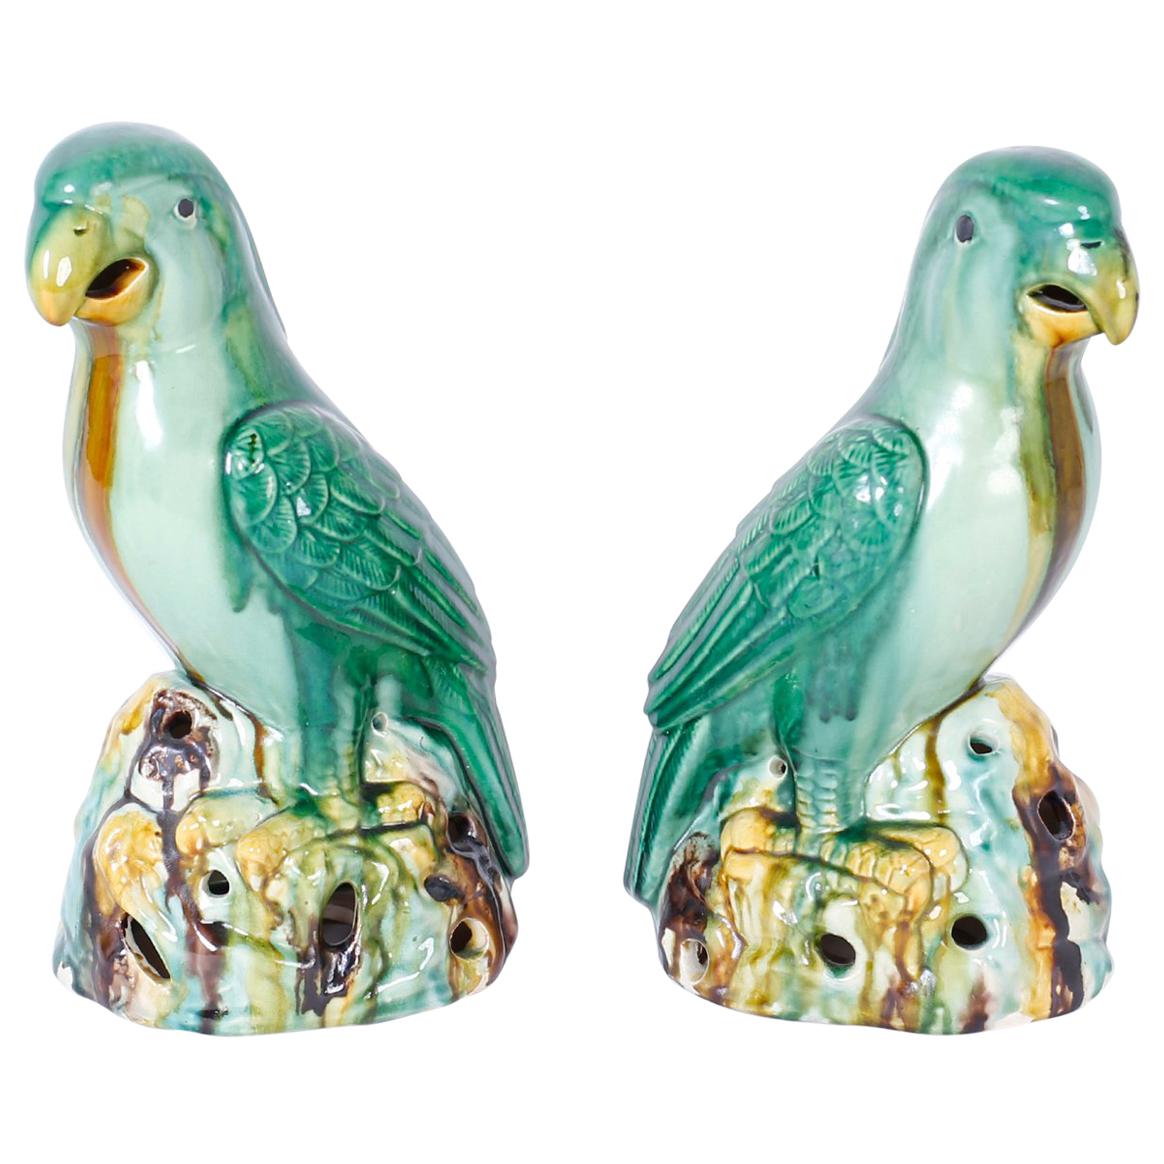 Pair of Glazed Terracotta or Sancai Parrots